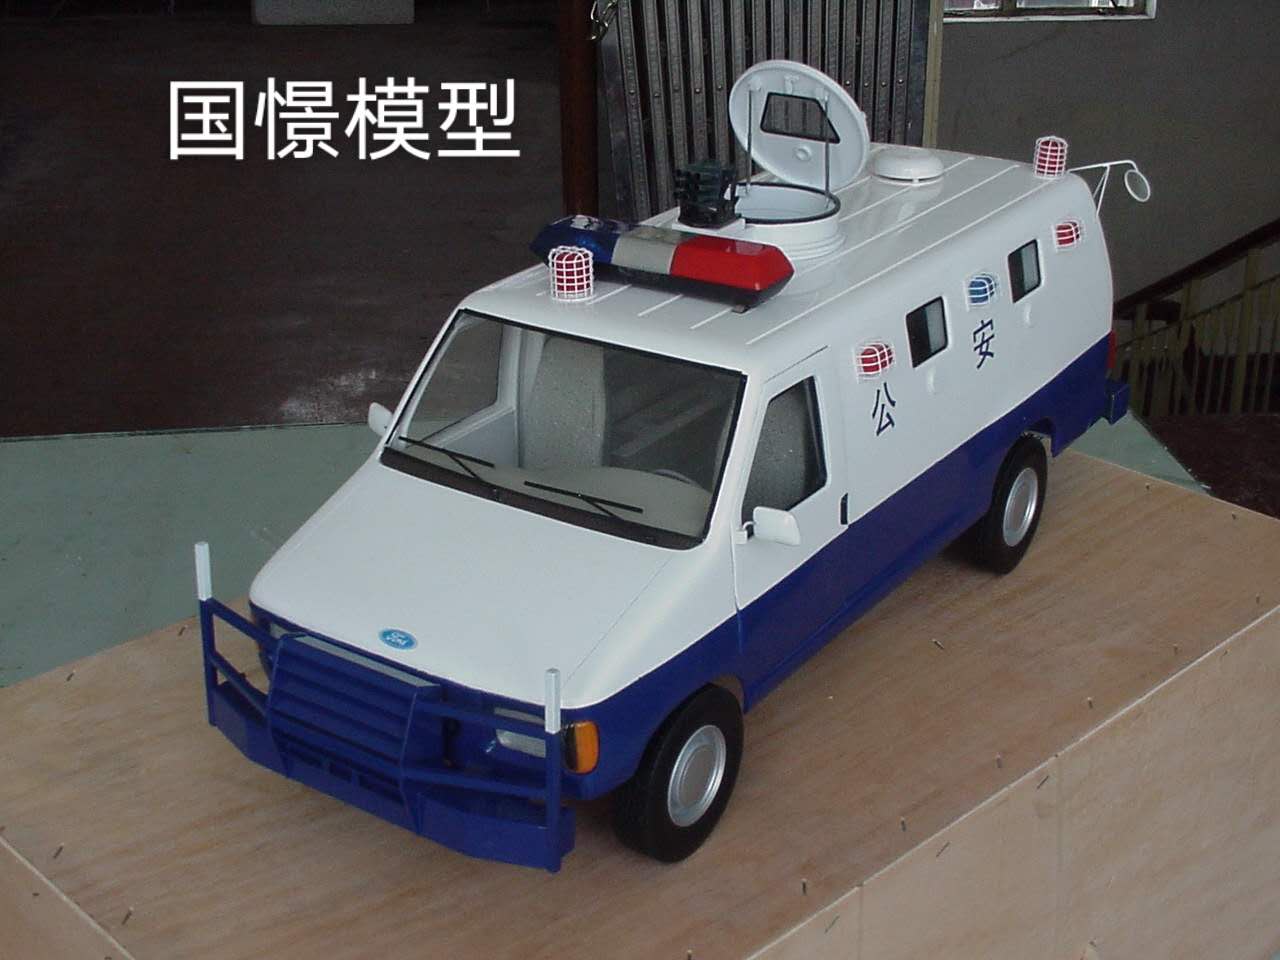 巴彦县车辆模型